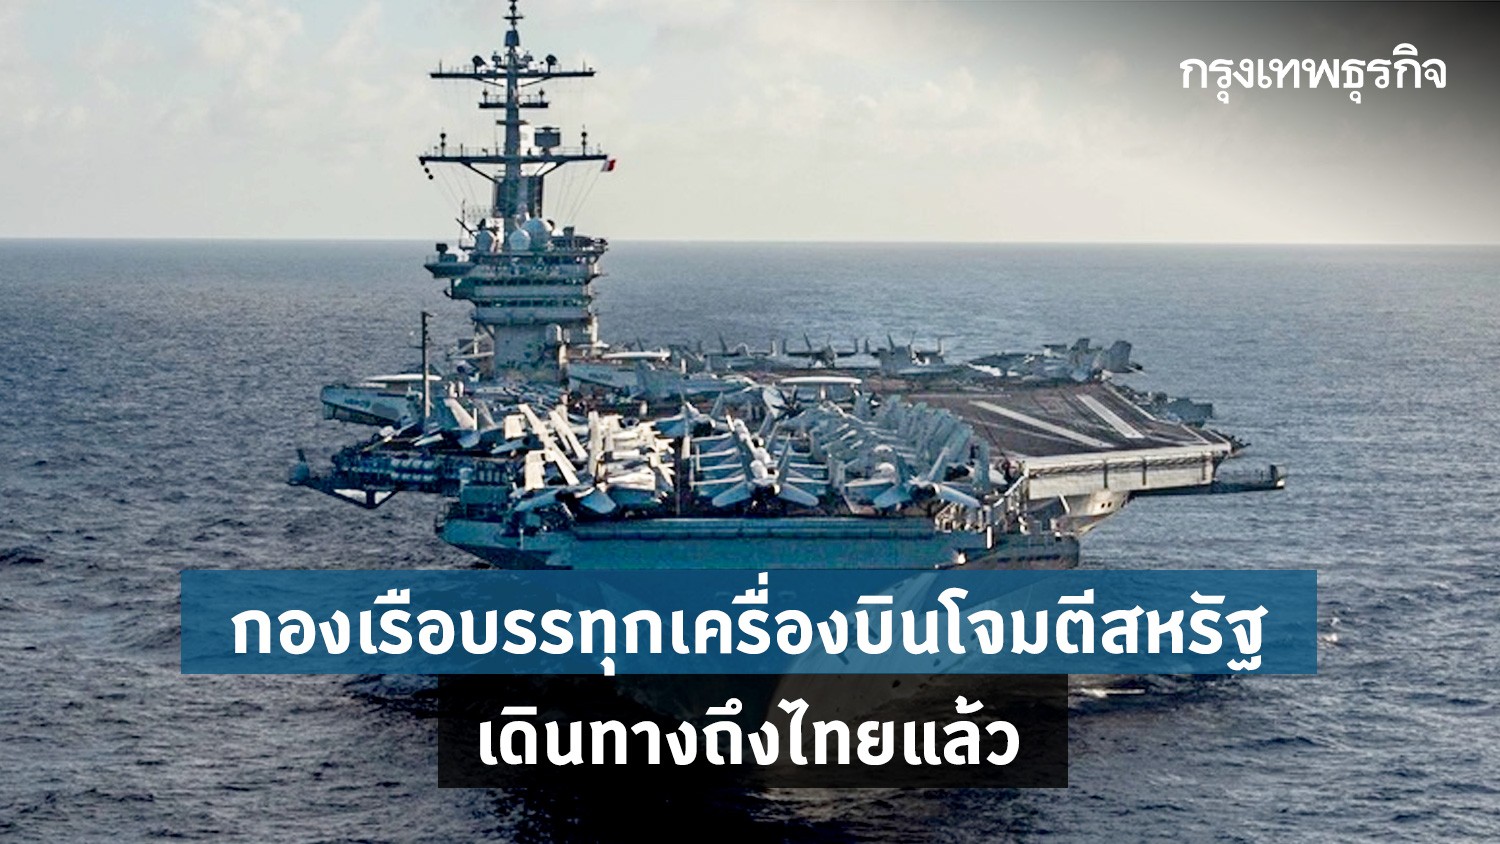 กองเรือบรรทุกเครื่องบินโจมตีสหรัฐ เดินทางถึงท่าเรือแหลมฉบังของไทยแล้ว